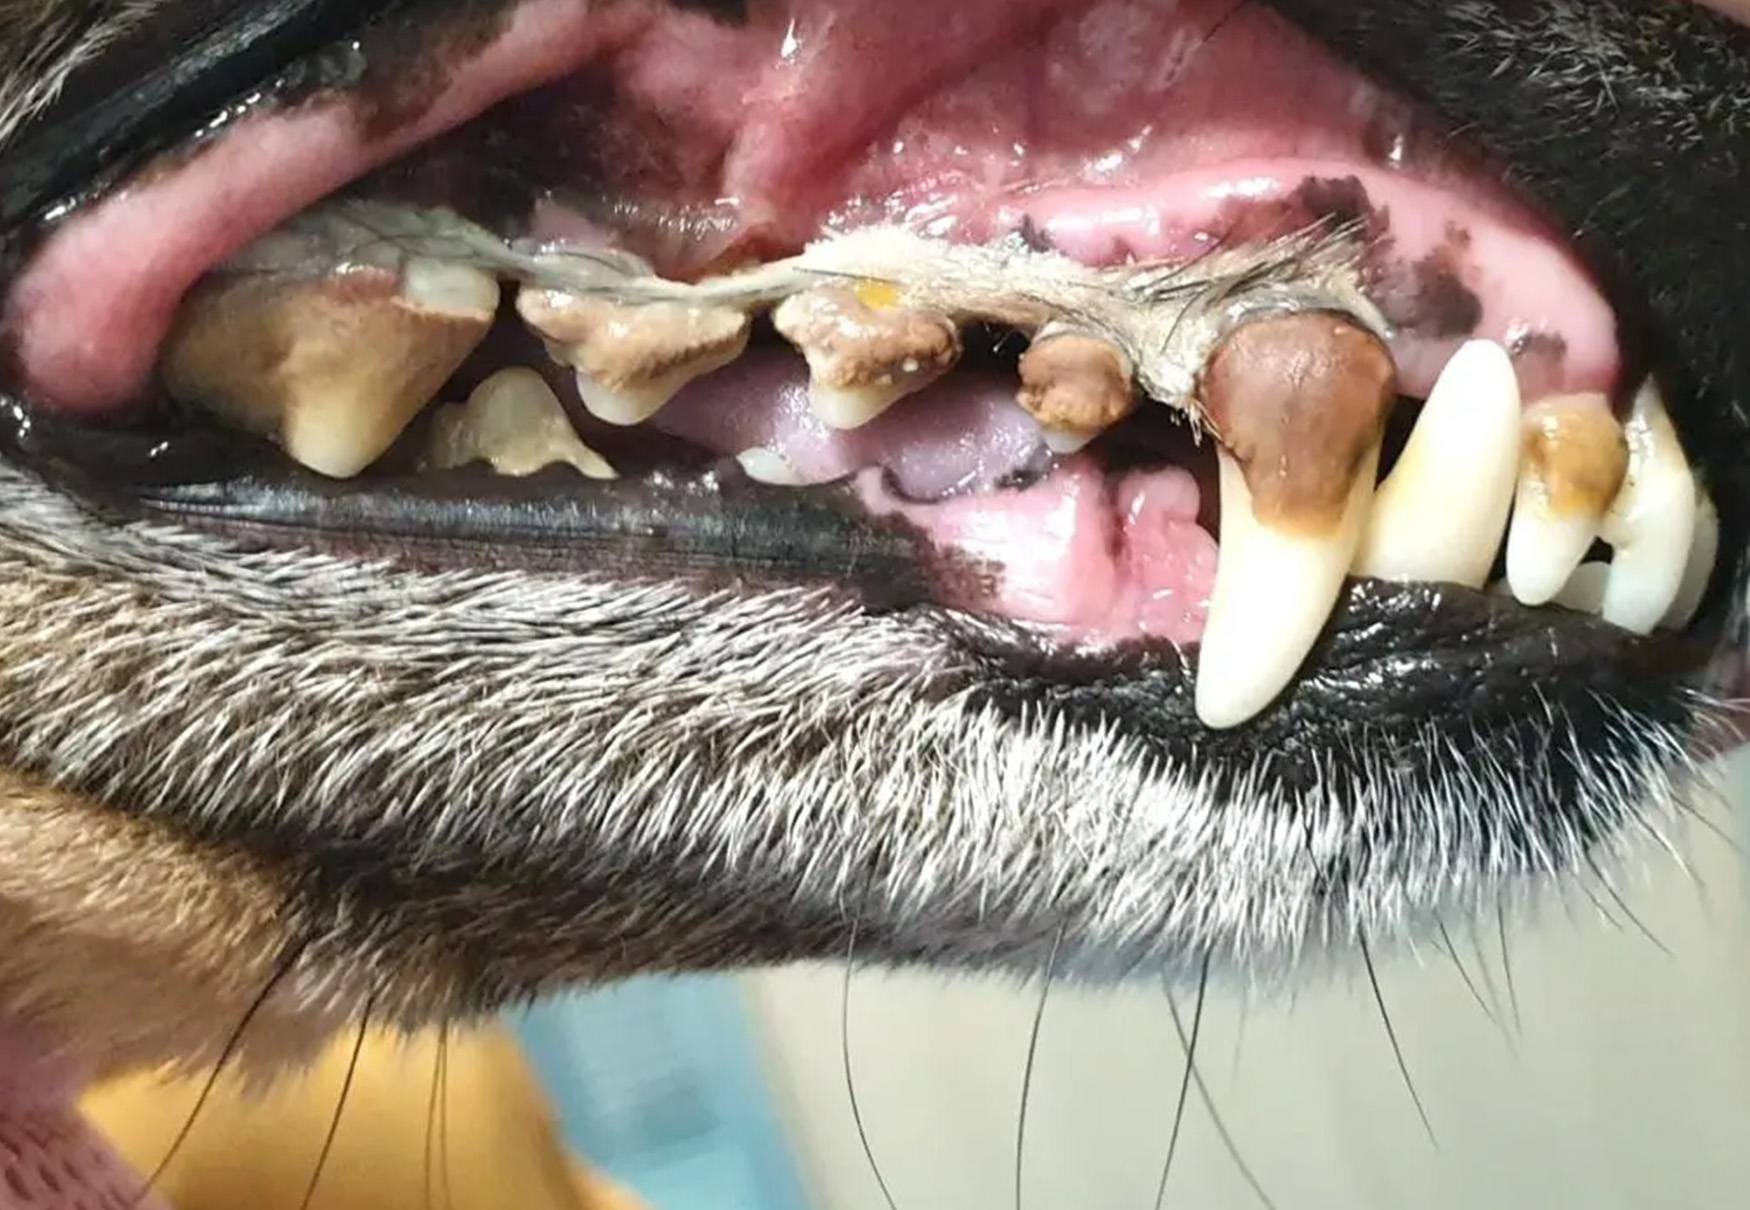 cane con problemi a denti e gengive